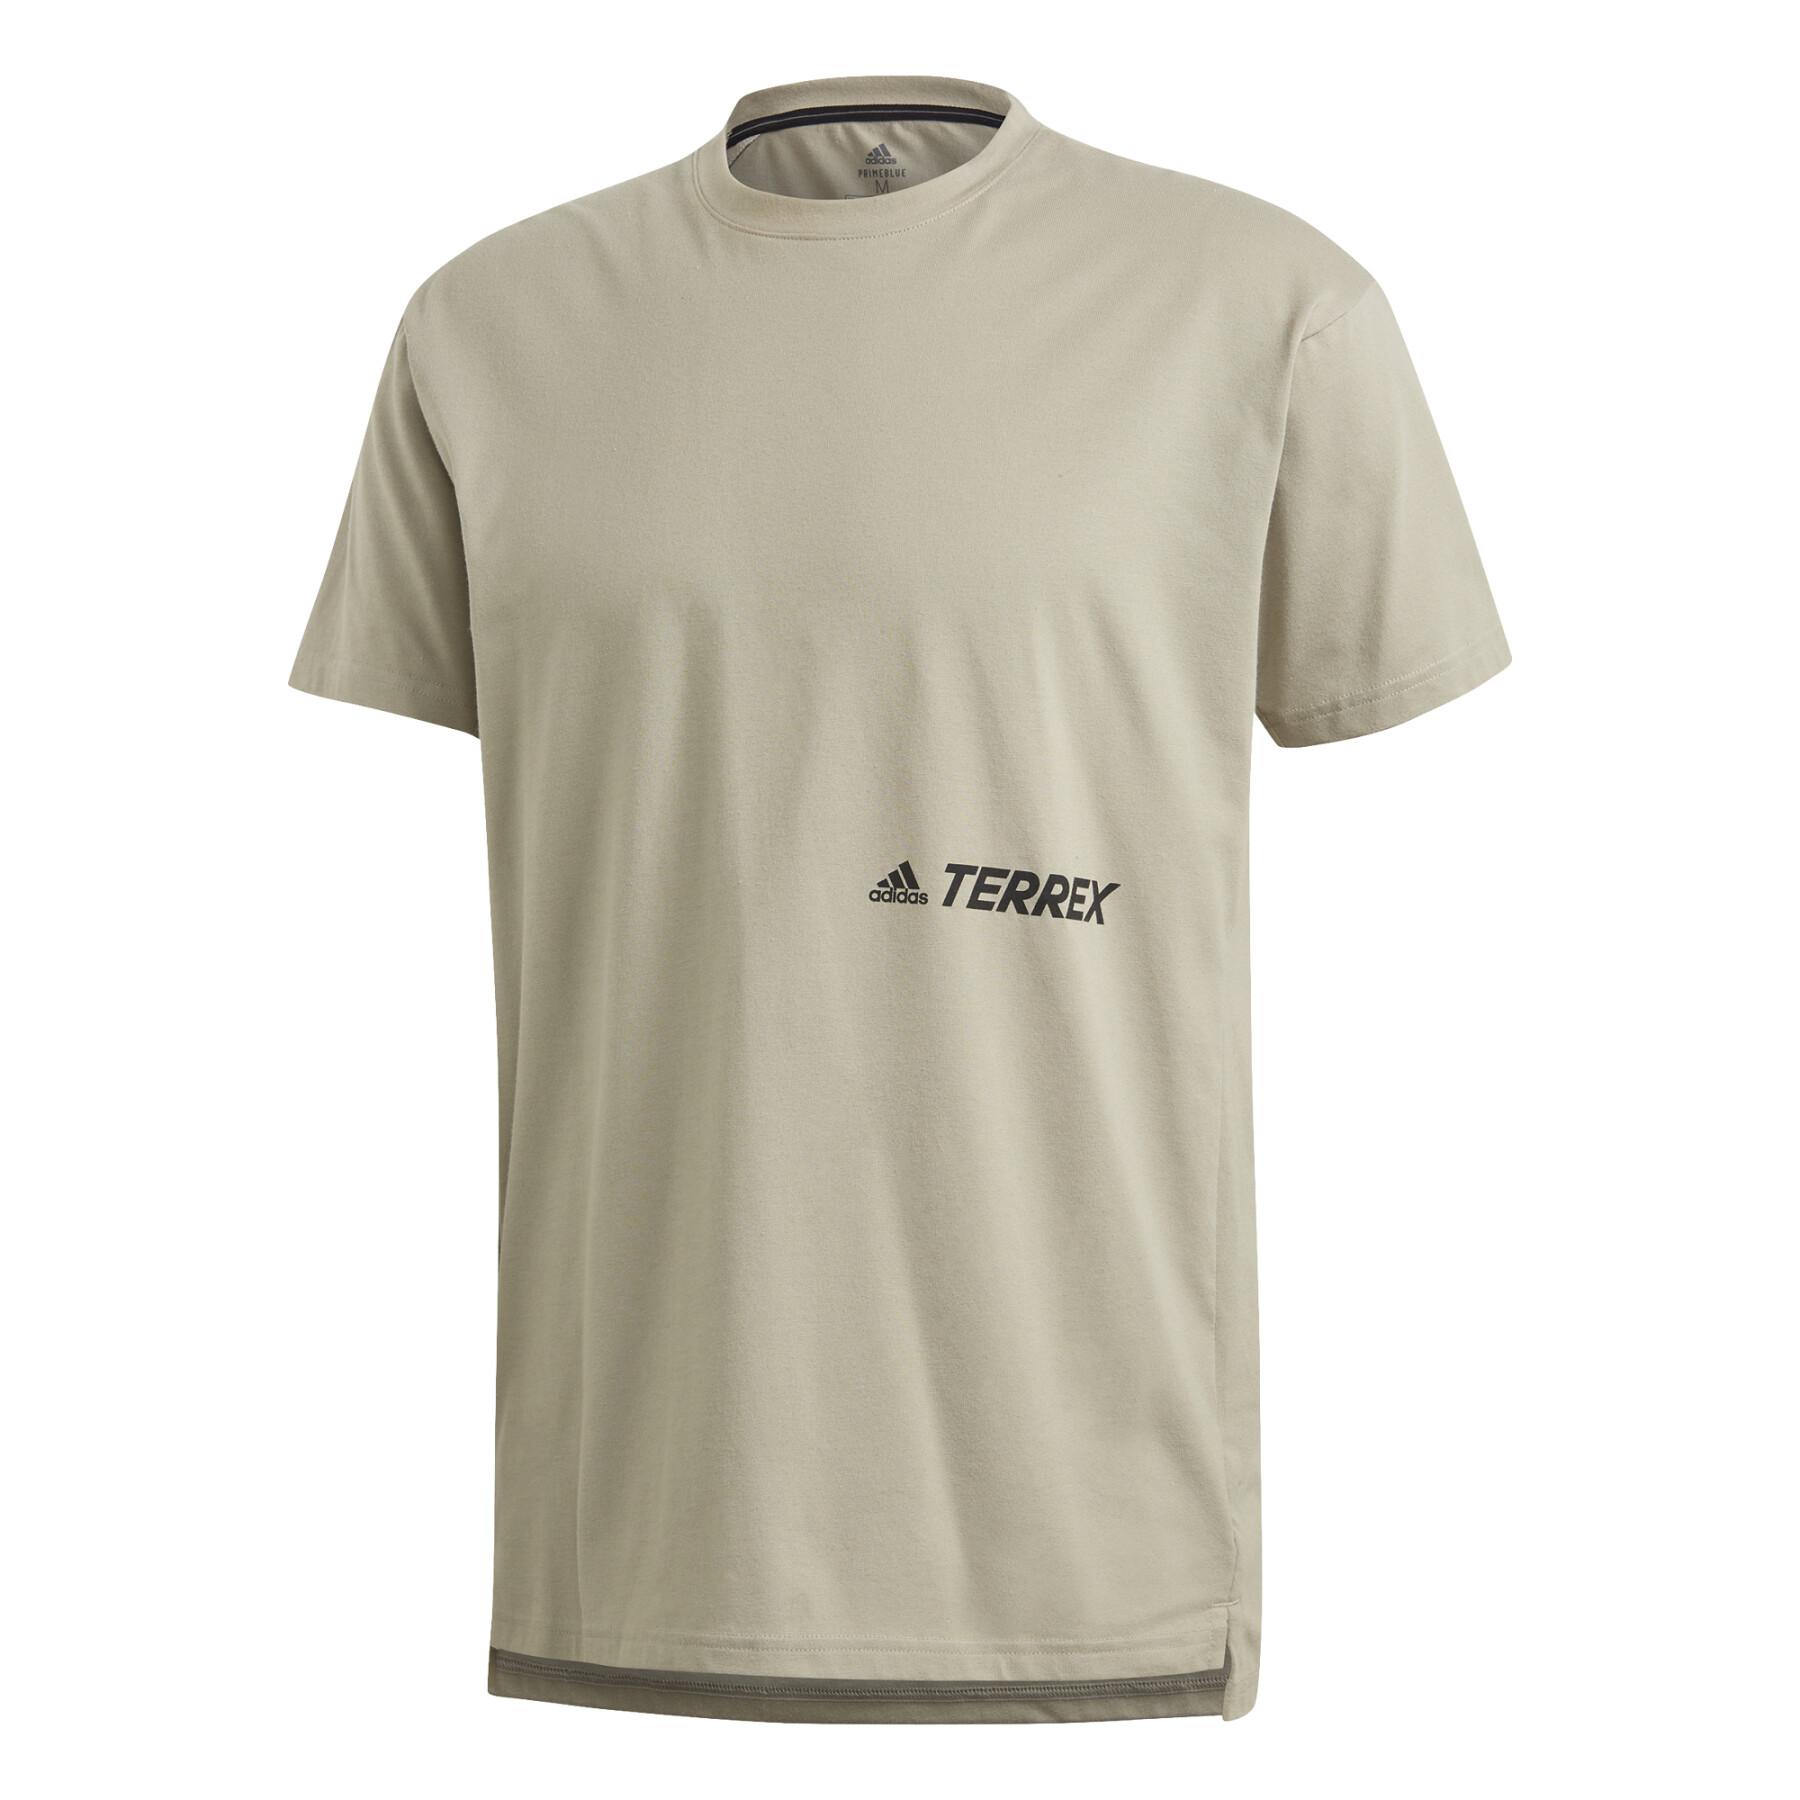 Camiseta adidas Terrex Primeblue Logo